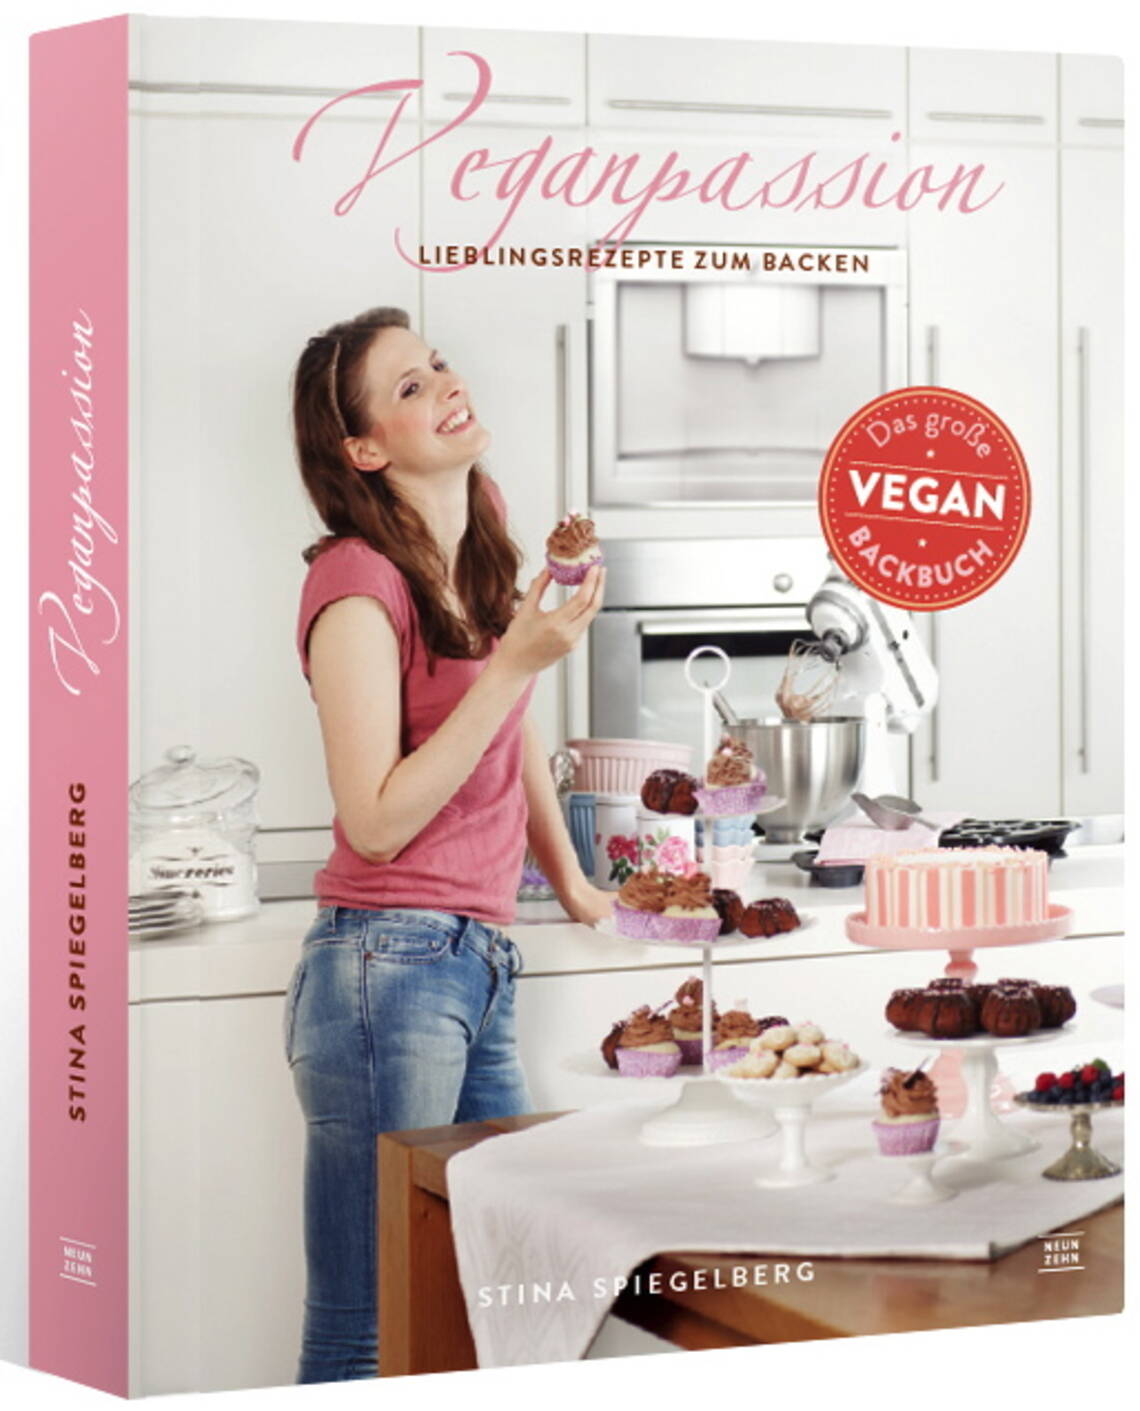 Veganpassion – Vegane Lieblingsrezepte zum Backen von Stina Spiegelberg